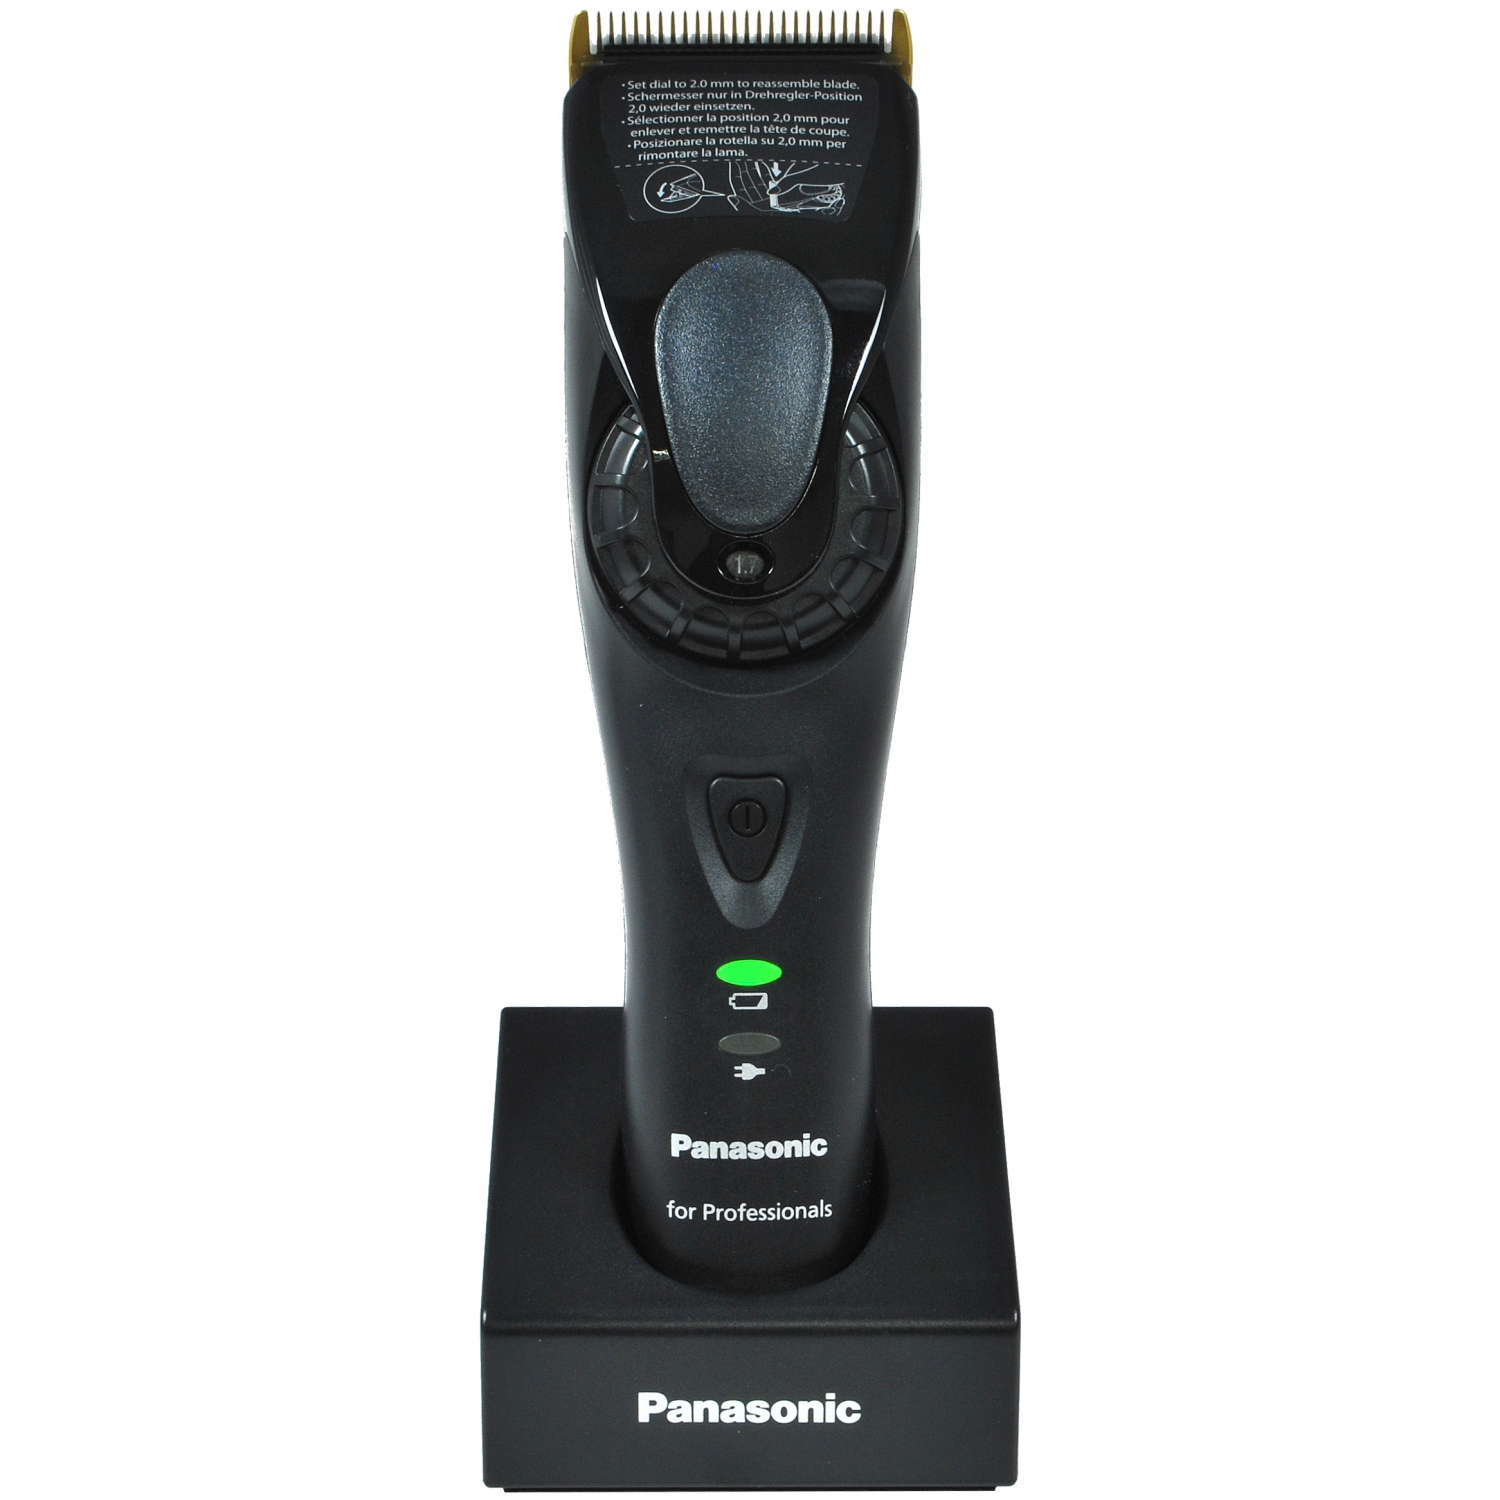 Panasonic hair trimmer photo